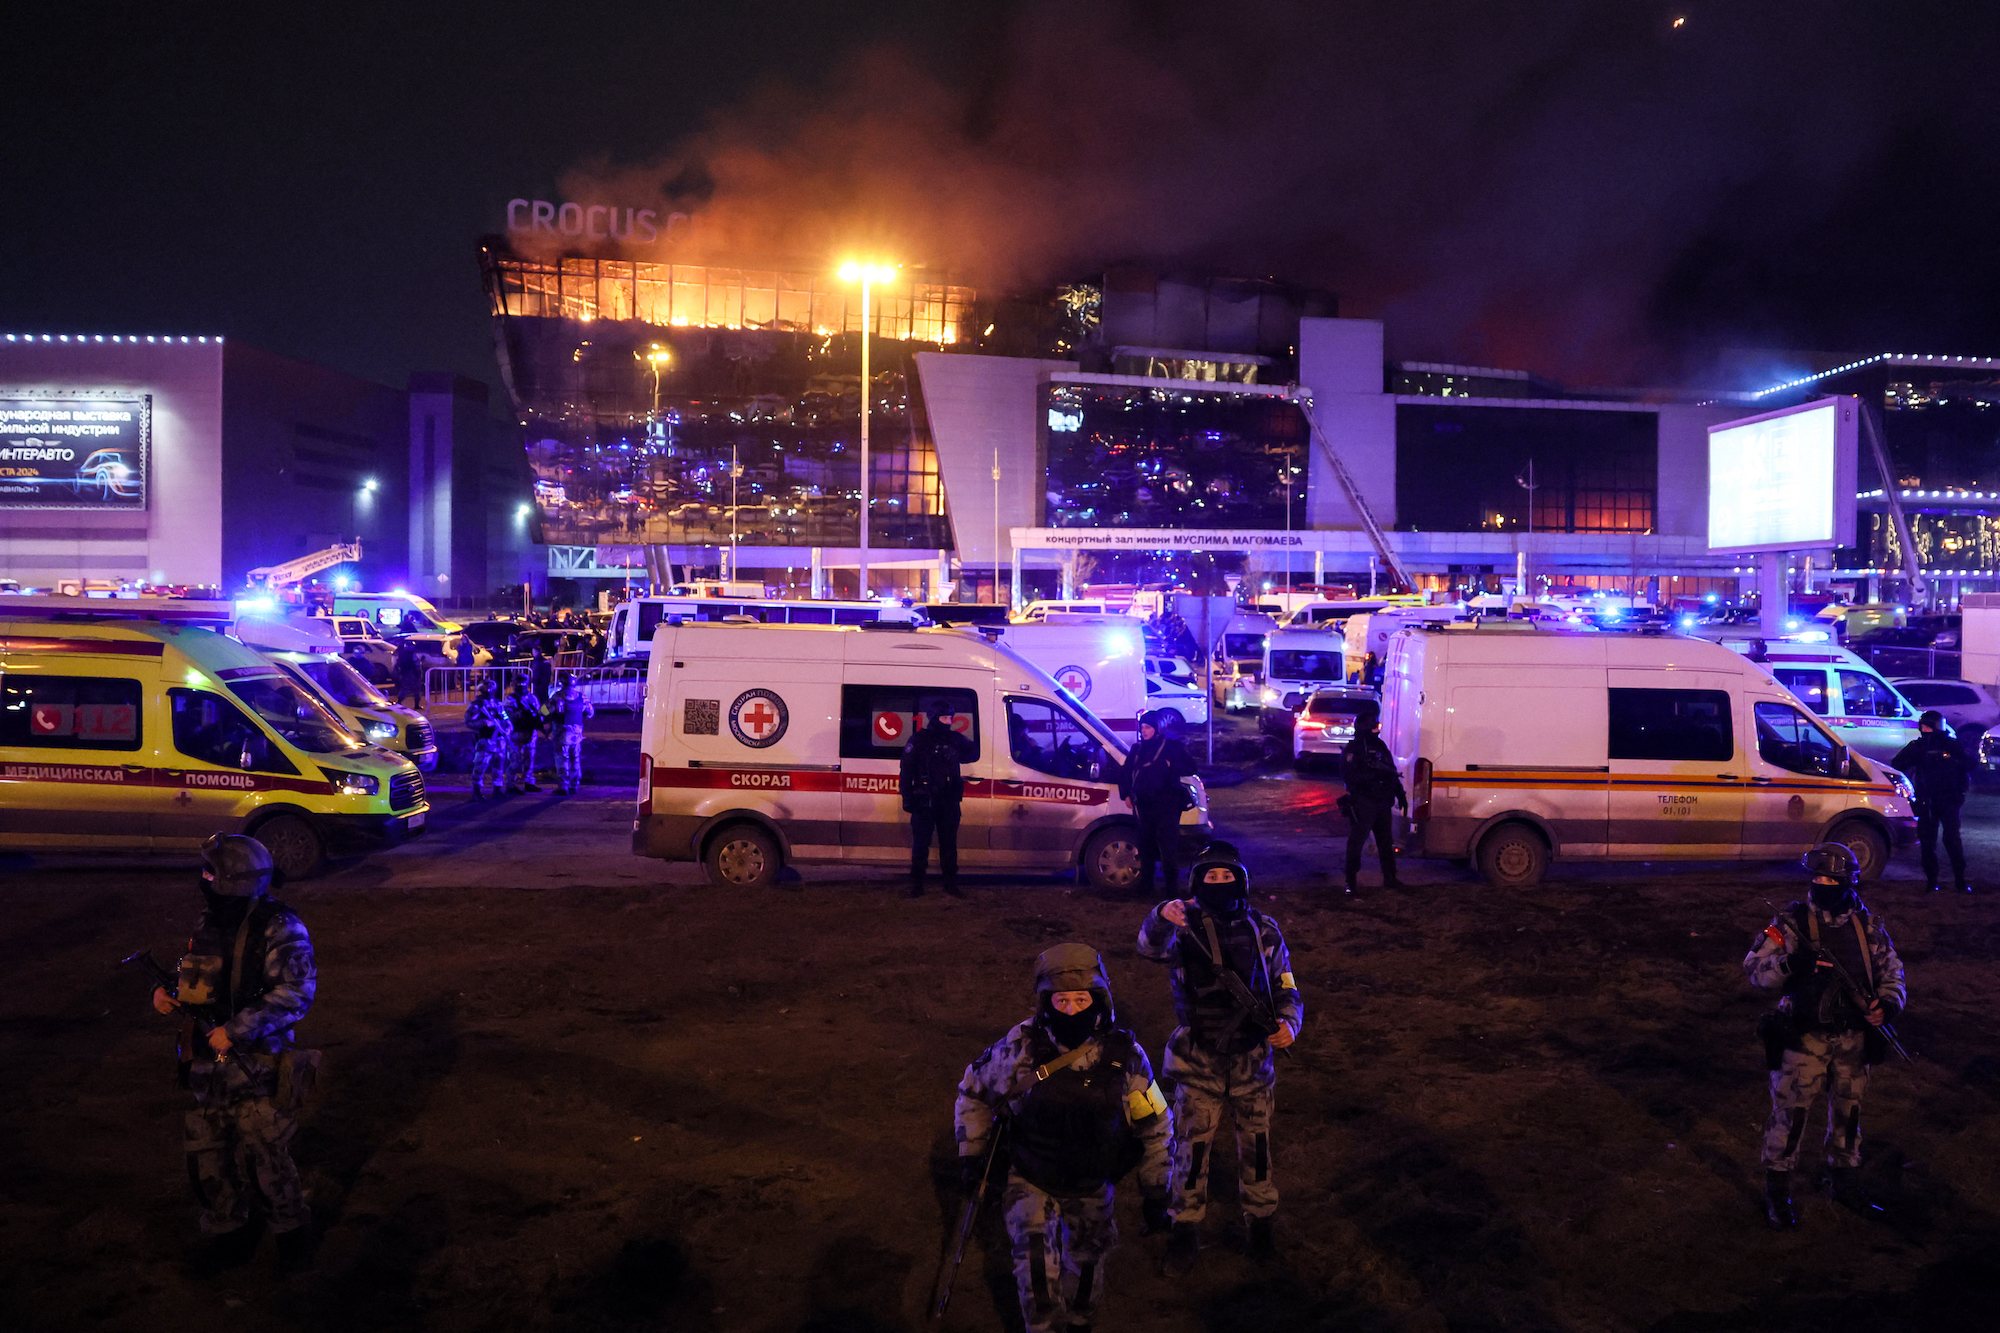 Các nhân viên thực thi pháp luật được triển khai bên ngoài phòng hòa nhạc Crocus City Hall đang bốc cháy ở Krasnogorsk, ngoại ô Moscow, vào ngày 22/3.